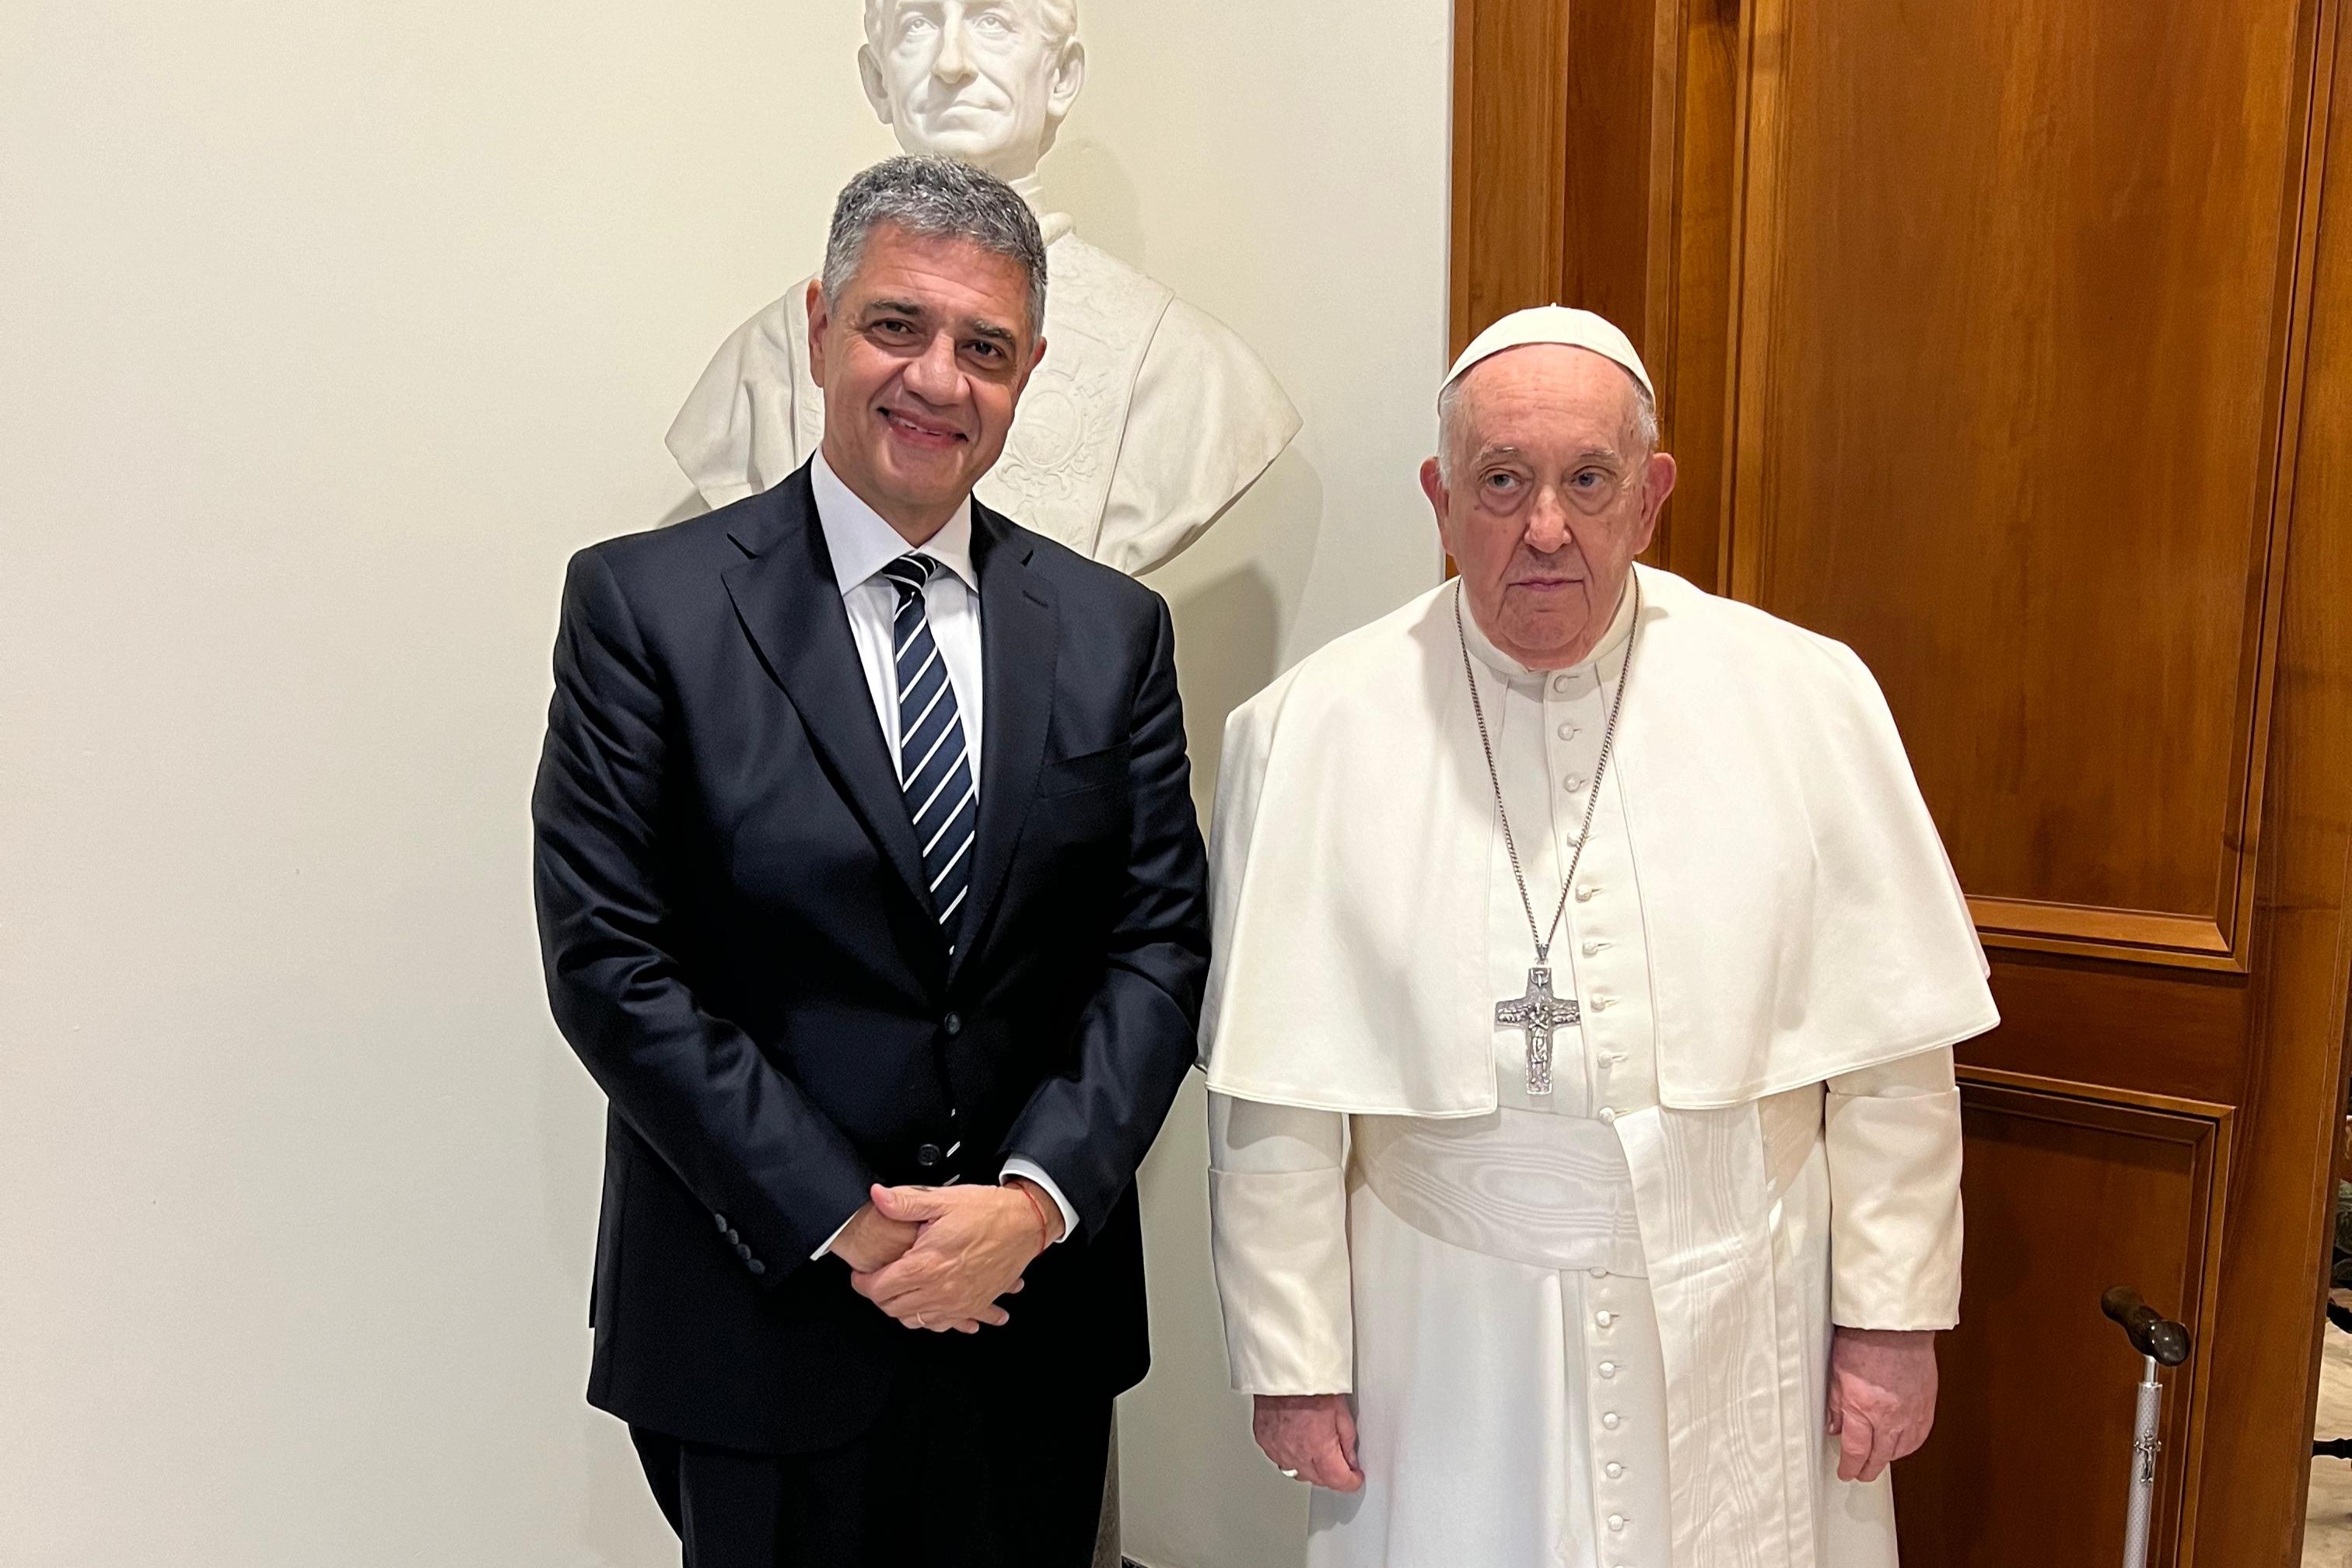 El Jefe de Gobierno fue recibido por el Papa Francisco en el Vaticano: “Me pidió trabajar en reconstruir el diálogo”